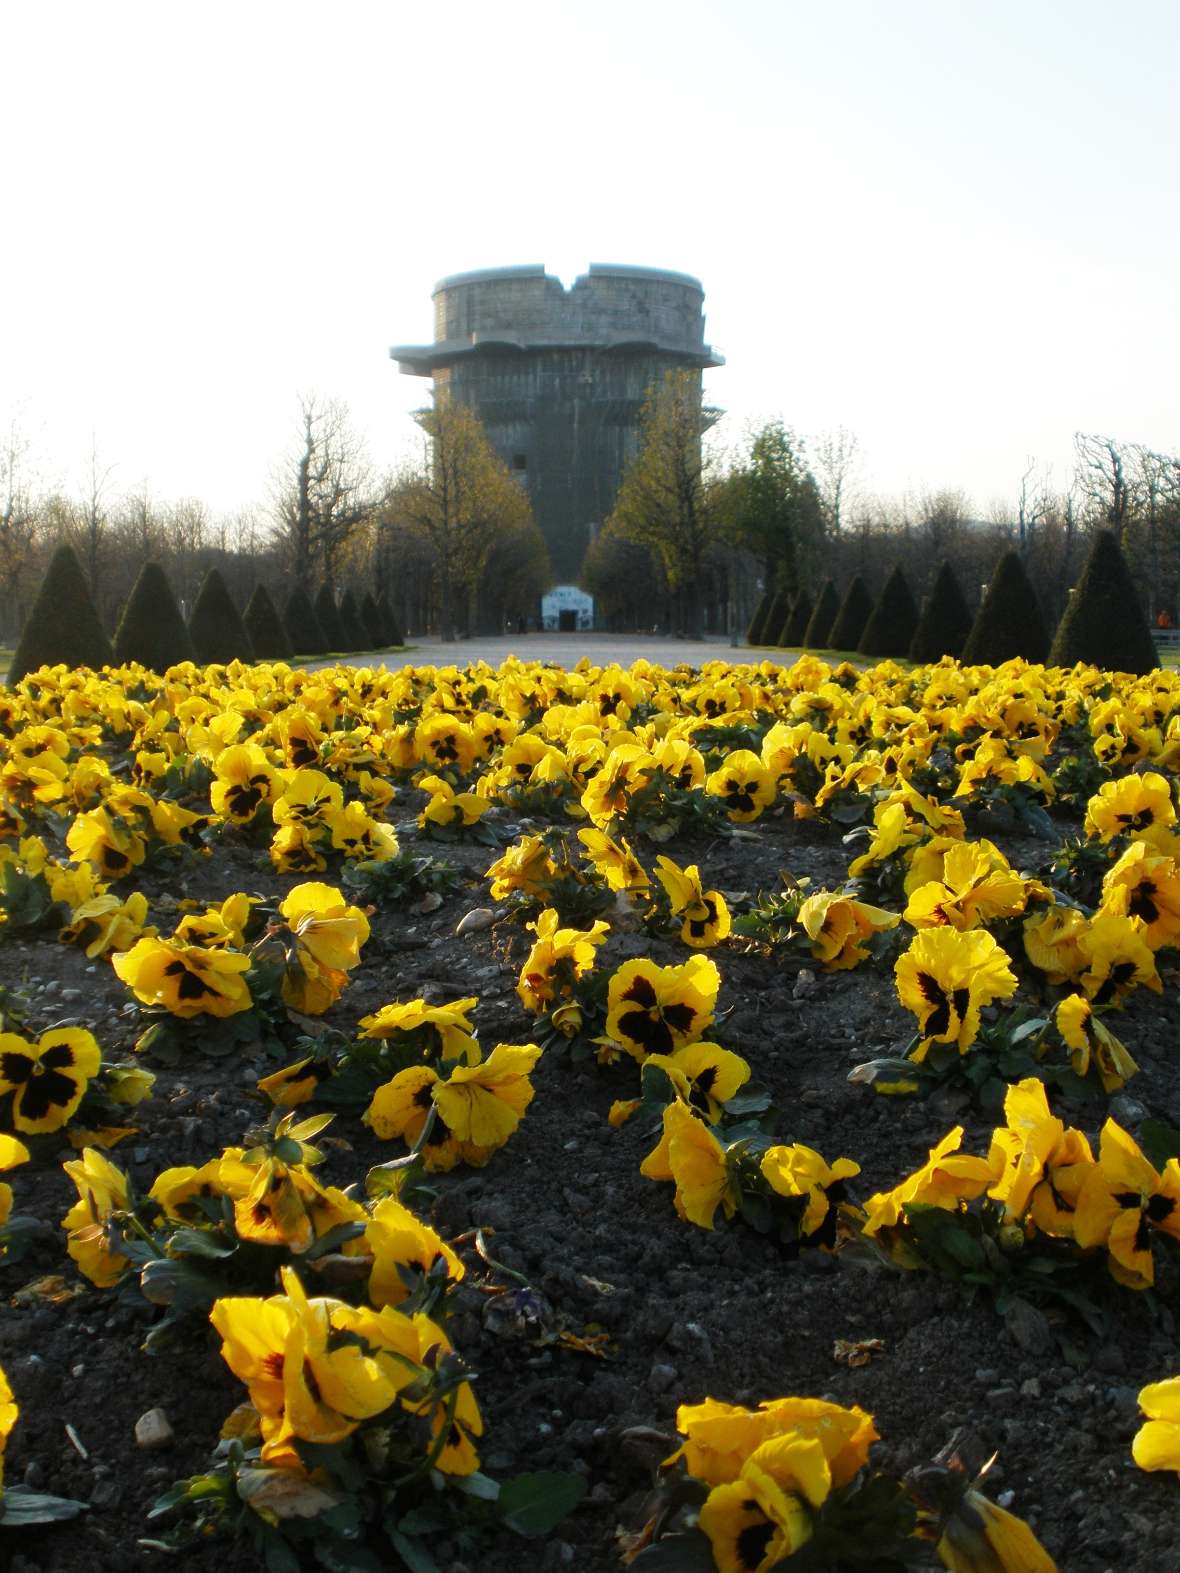 zu sehen sind gelbe Blumen in einem Beet, dahinter ein großes, rundes Gebäude